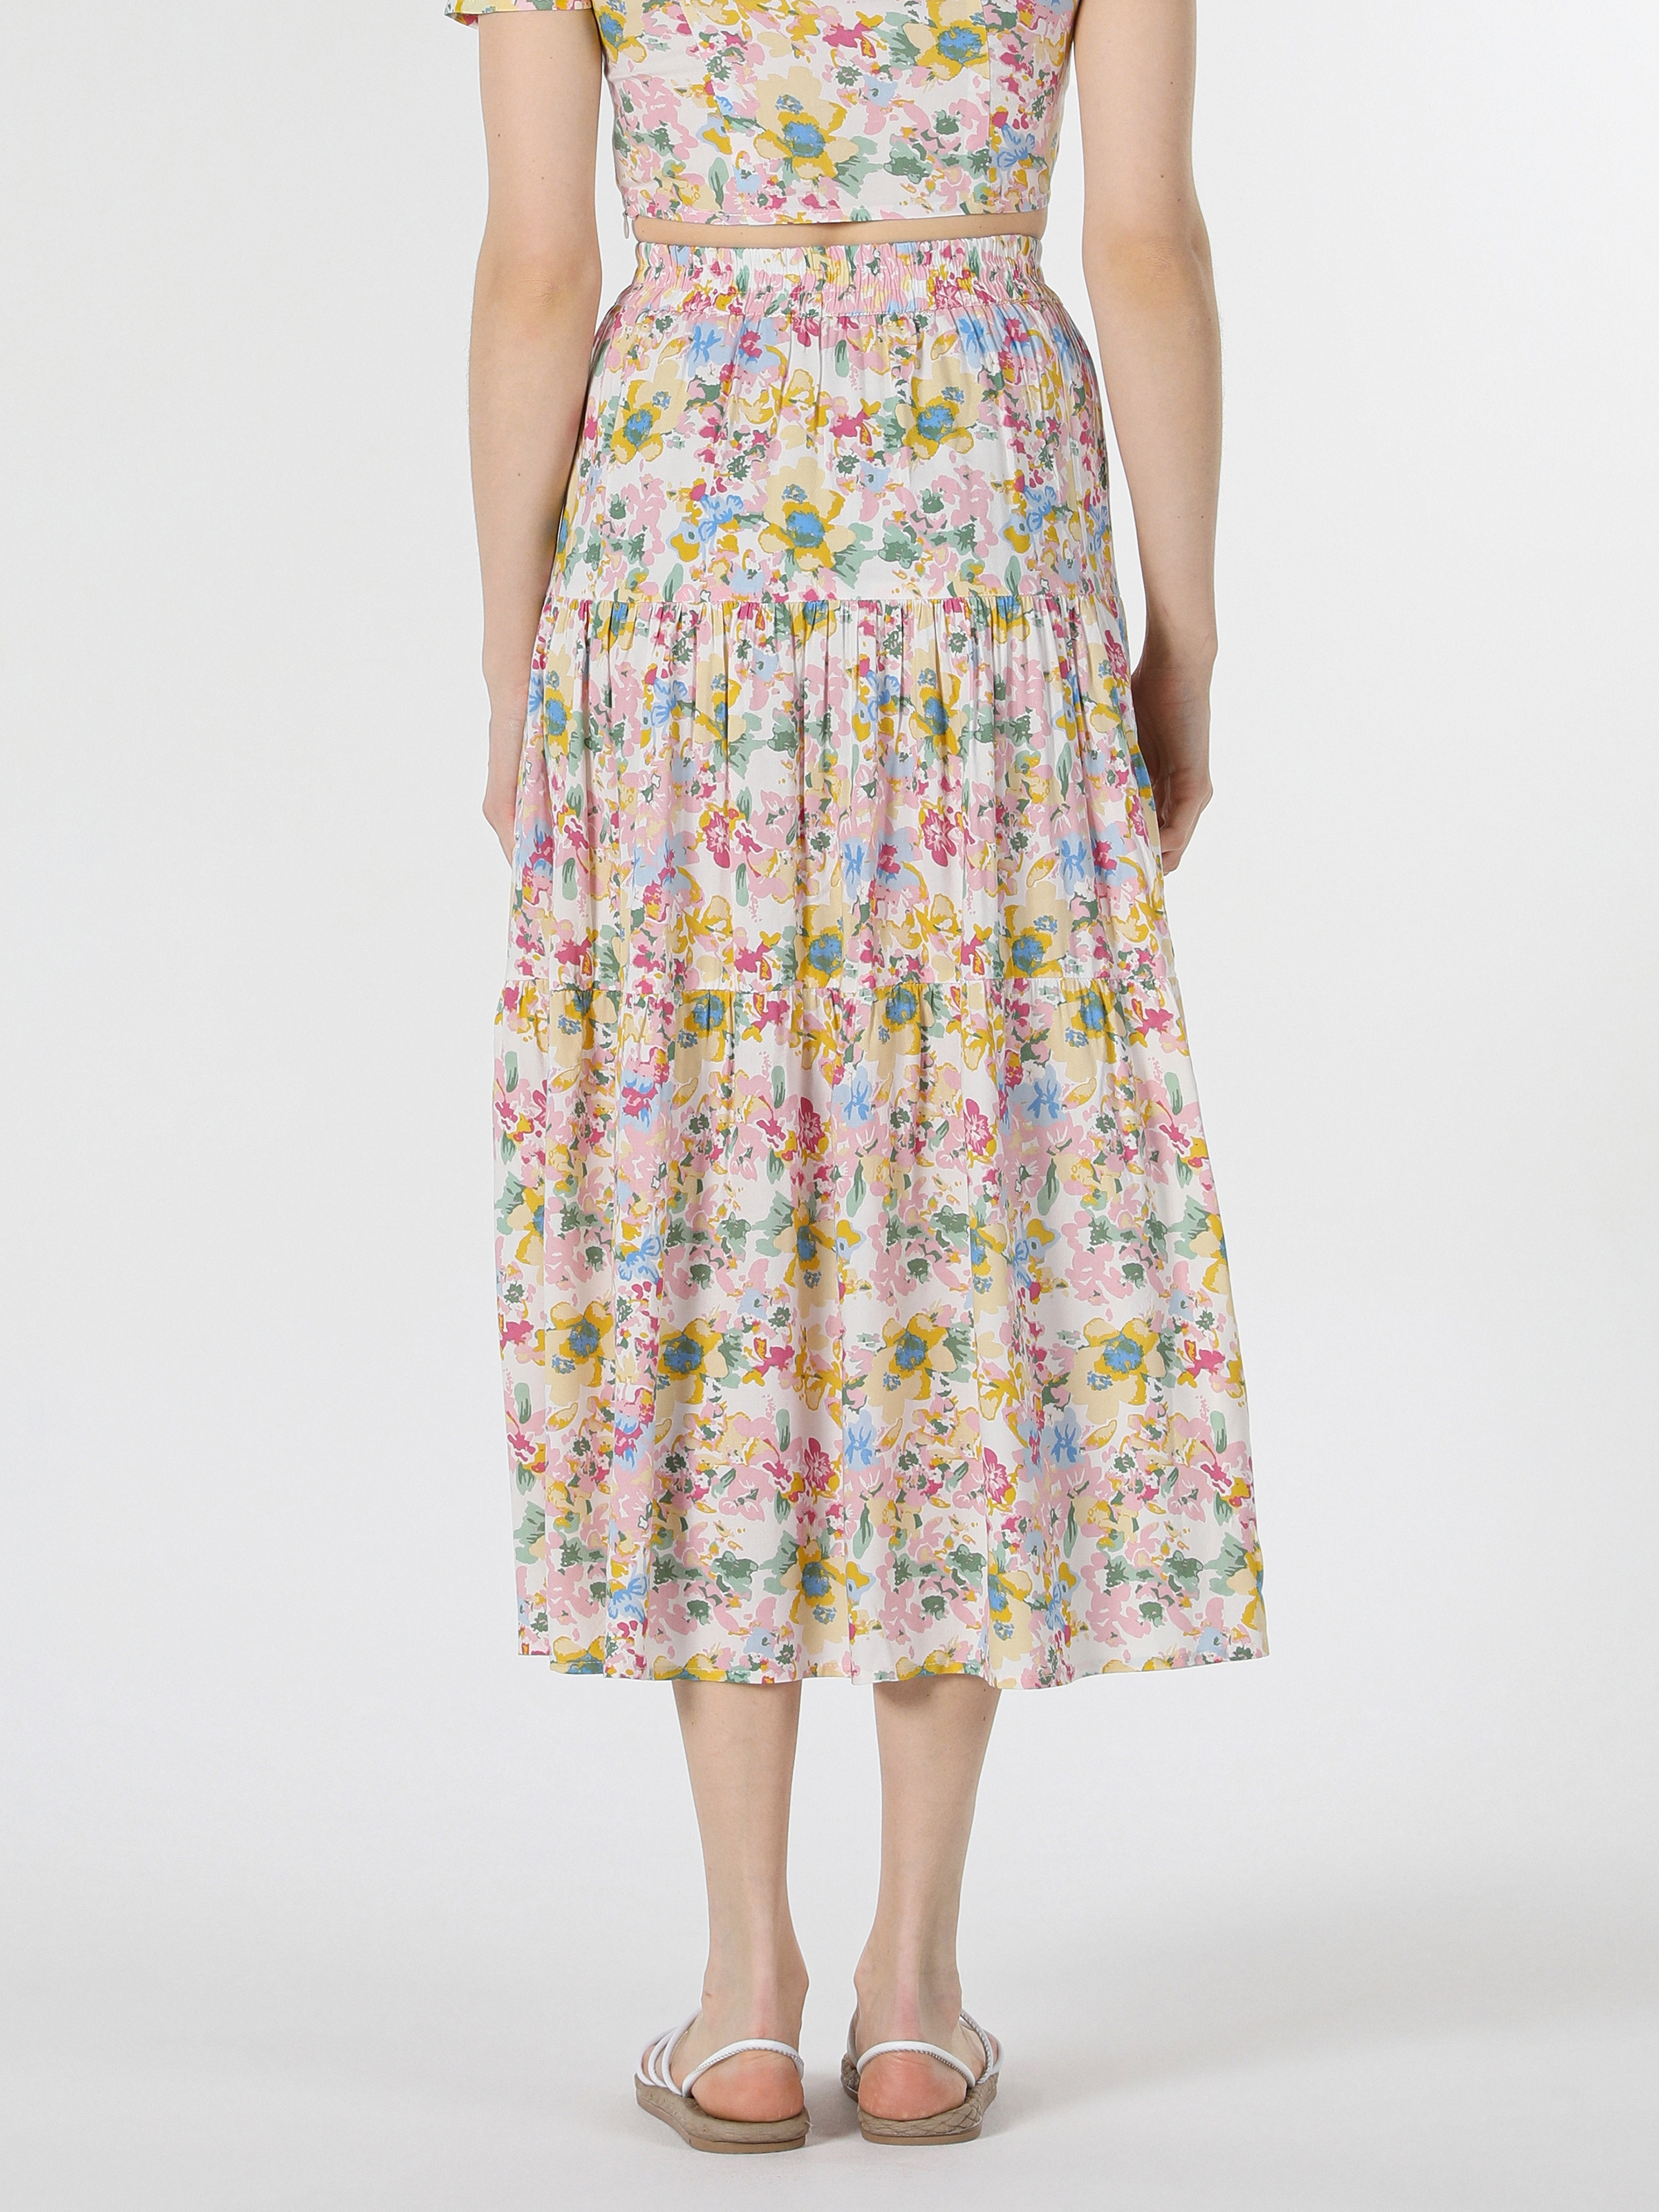 Afficher les détails de Jupe Femme Multicolore Imprimé Floral Maxi Longueur